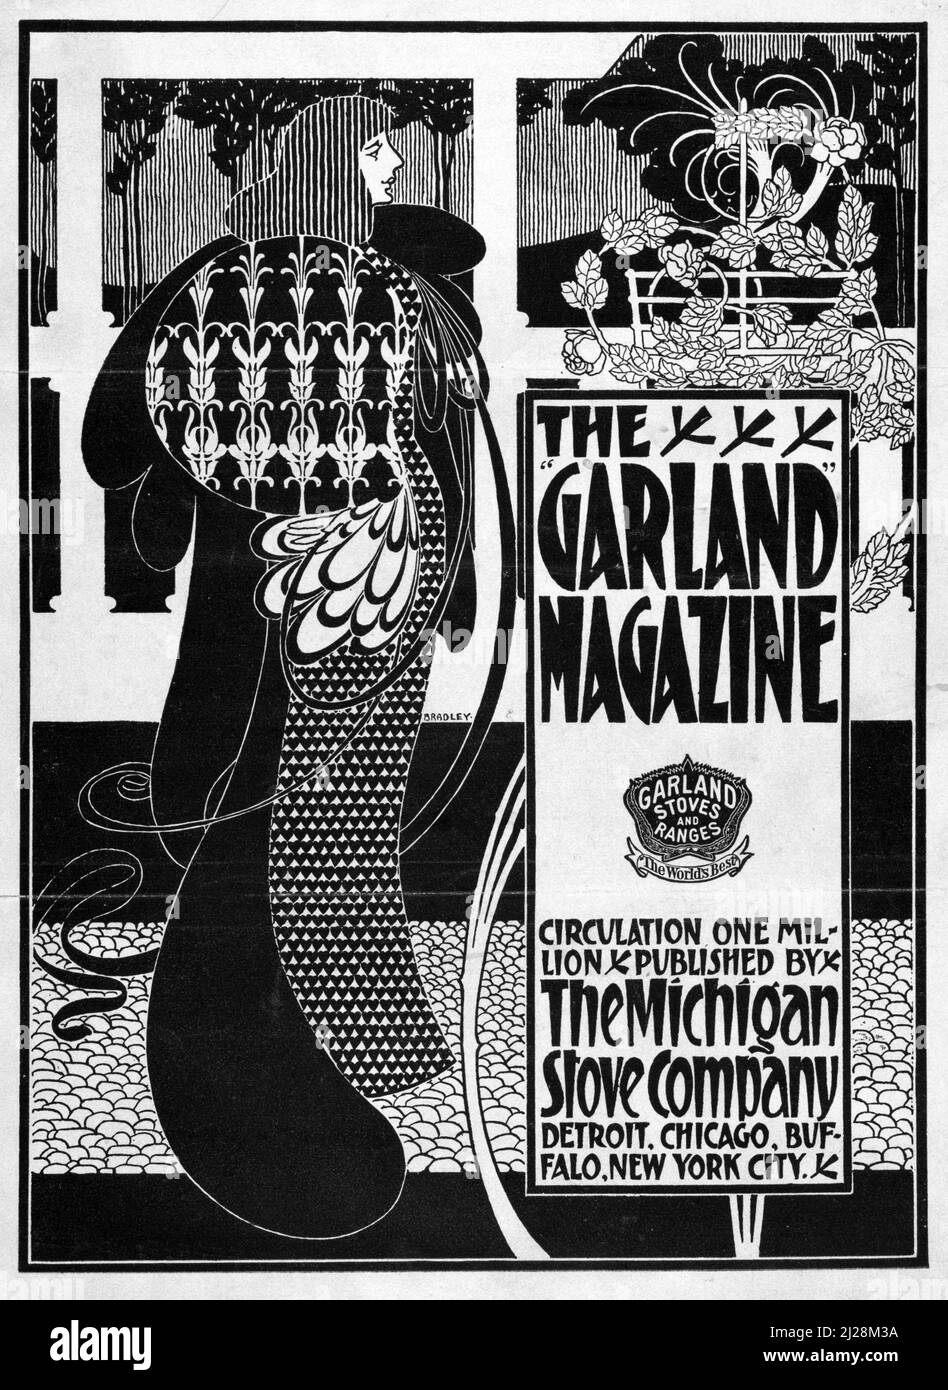 Will Bradley Artwork - The Garland Magazine (1894-1896) American Art Nouveau - Alte und Vintage Poster / Zeitschriftencover in schwarz und weiß. Stockfoto